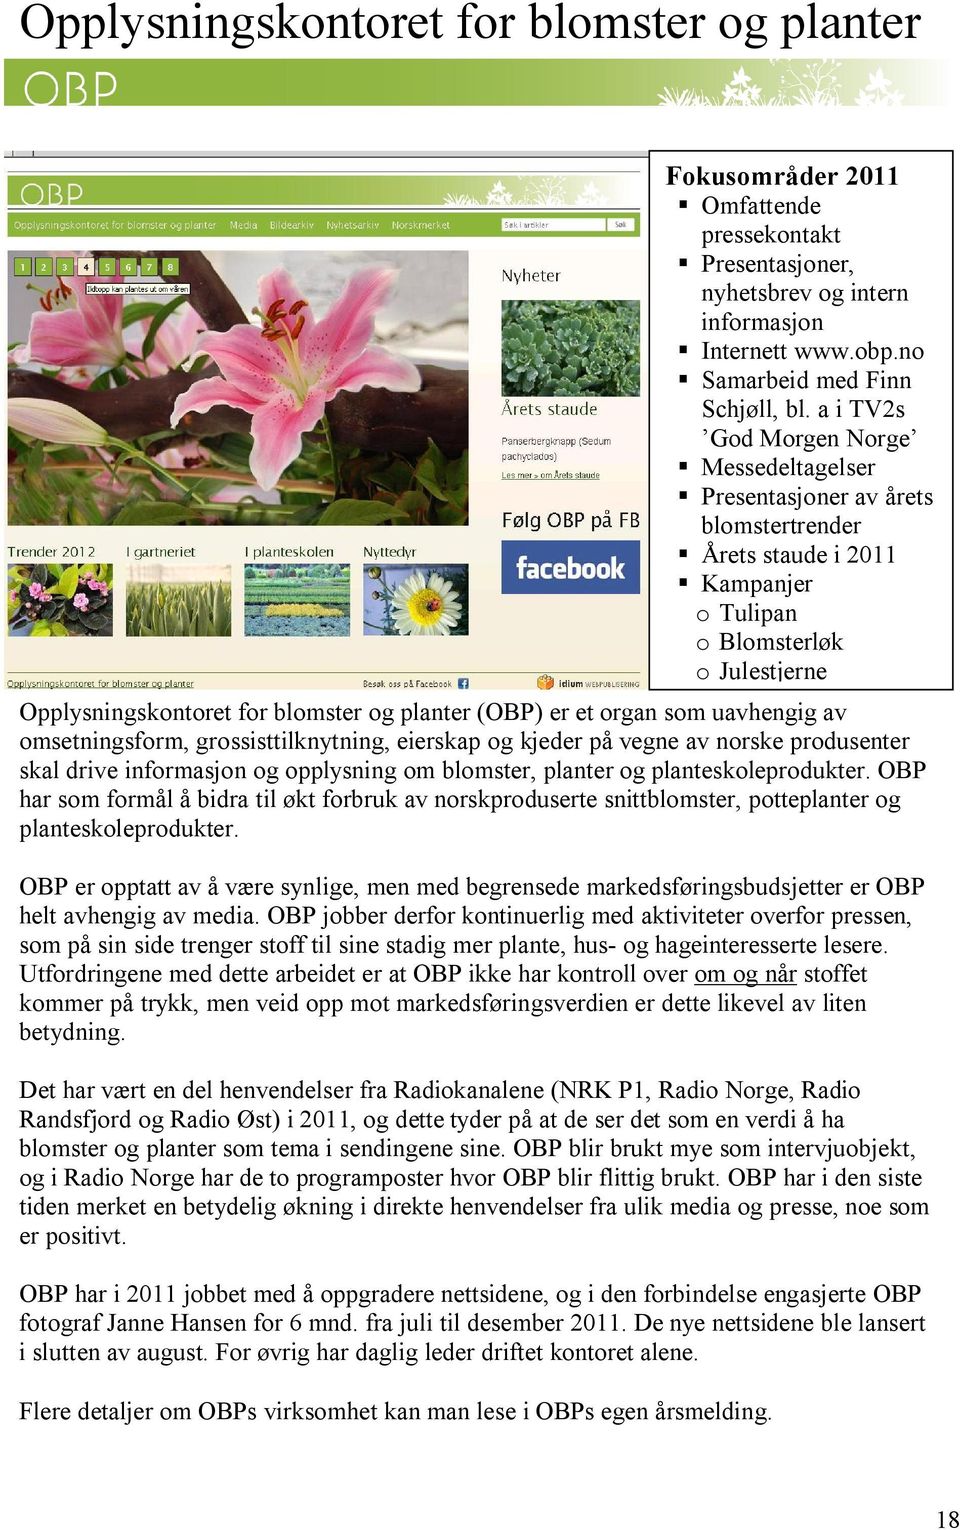 OBP har som formål å bidra til økt forbruk av norskproduserte snittblomster, potteplanter og planteskoleprodukter.